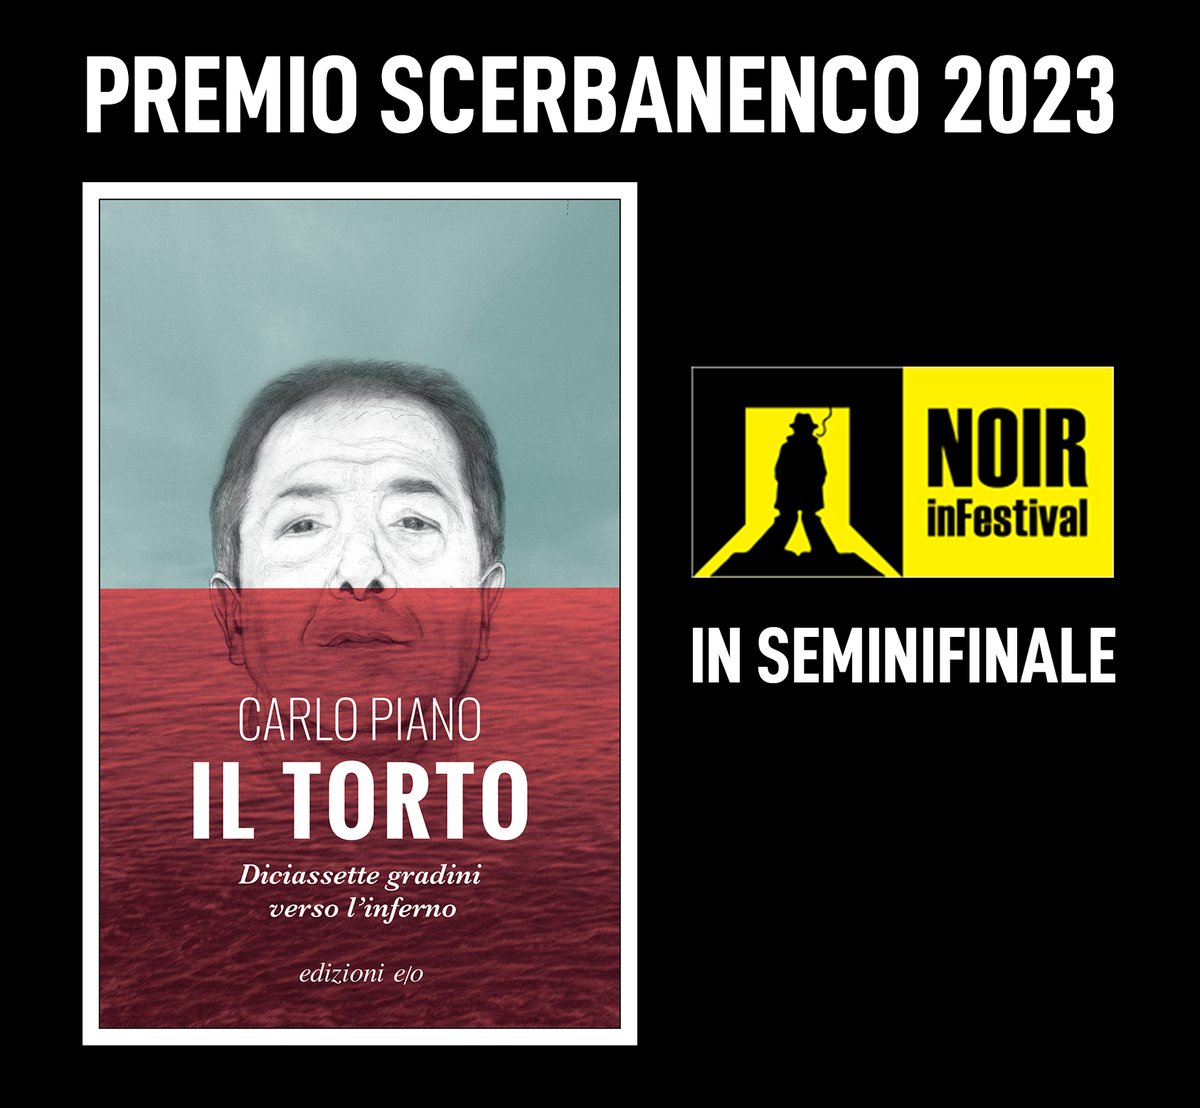 Il torto di Carlo Piano è in semifinale al Premio Scerbanenco. È possibile votare Il torto per farlo entrare in finale qui > noirfest.com/scerbanenco-20… @NoirInFestival